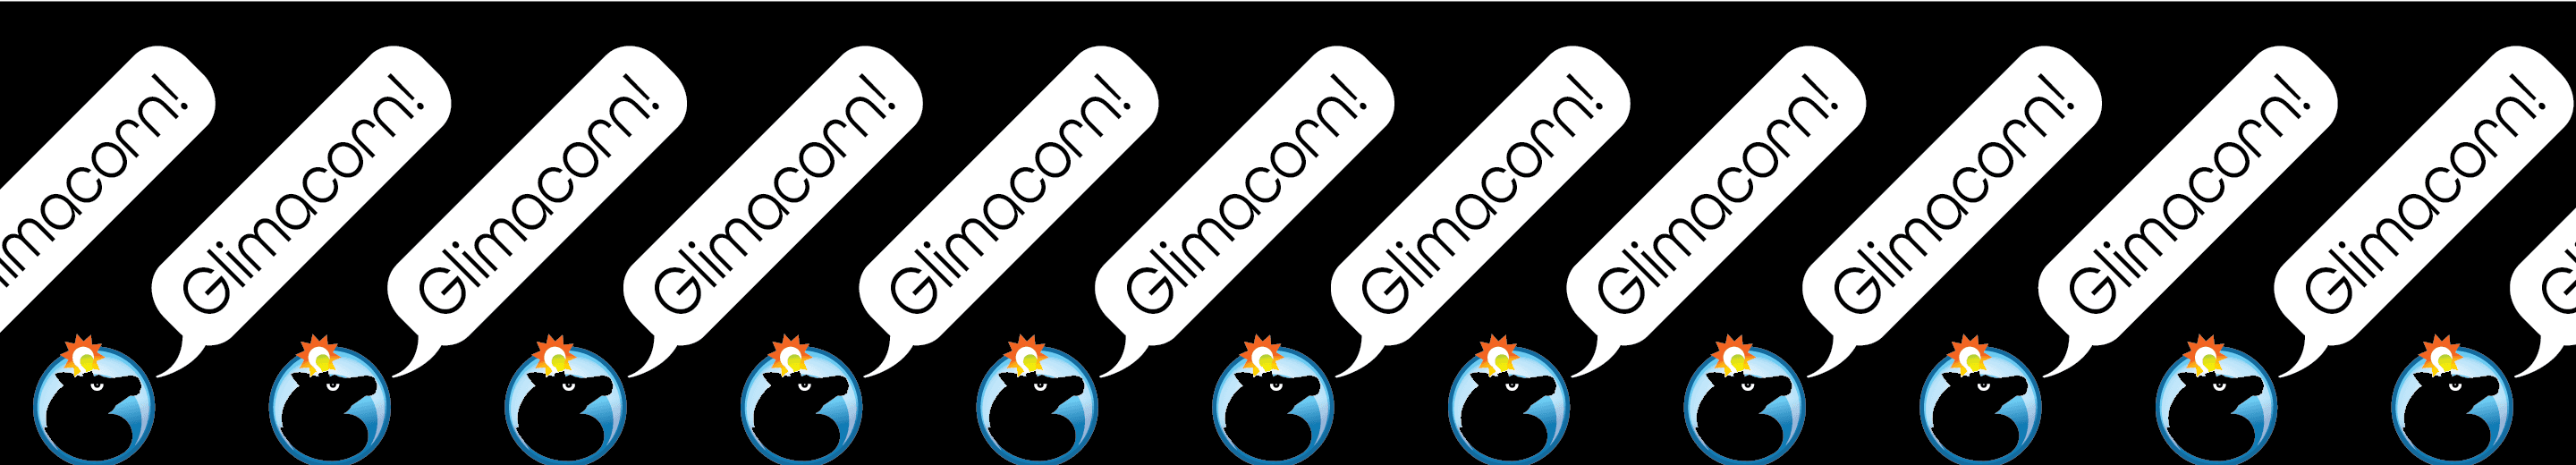 Glimacorn バナー